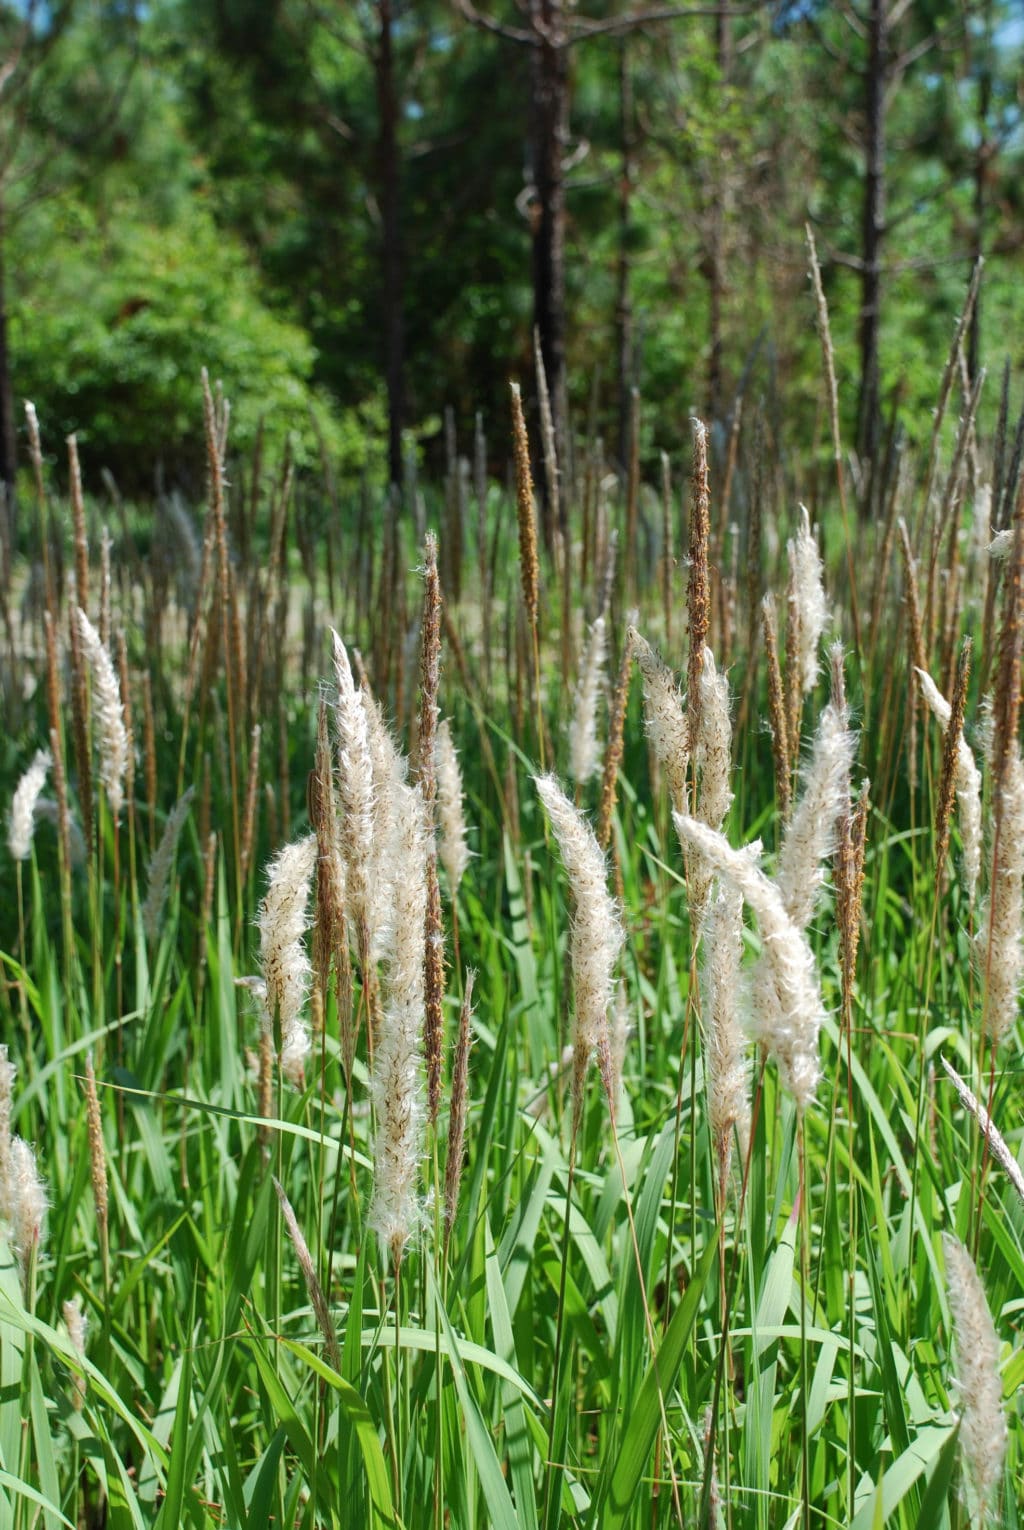 Invasive Plant Species: Congograss